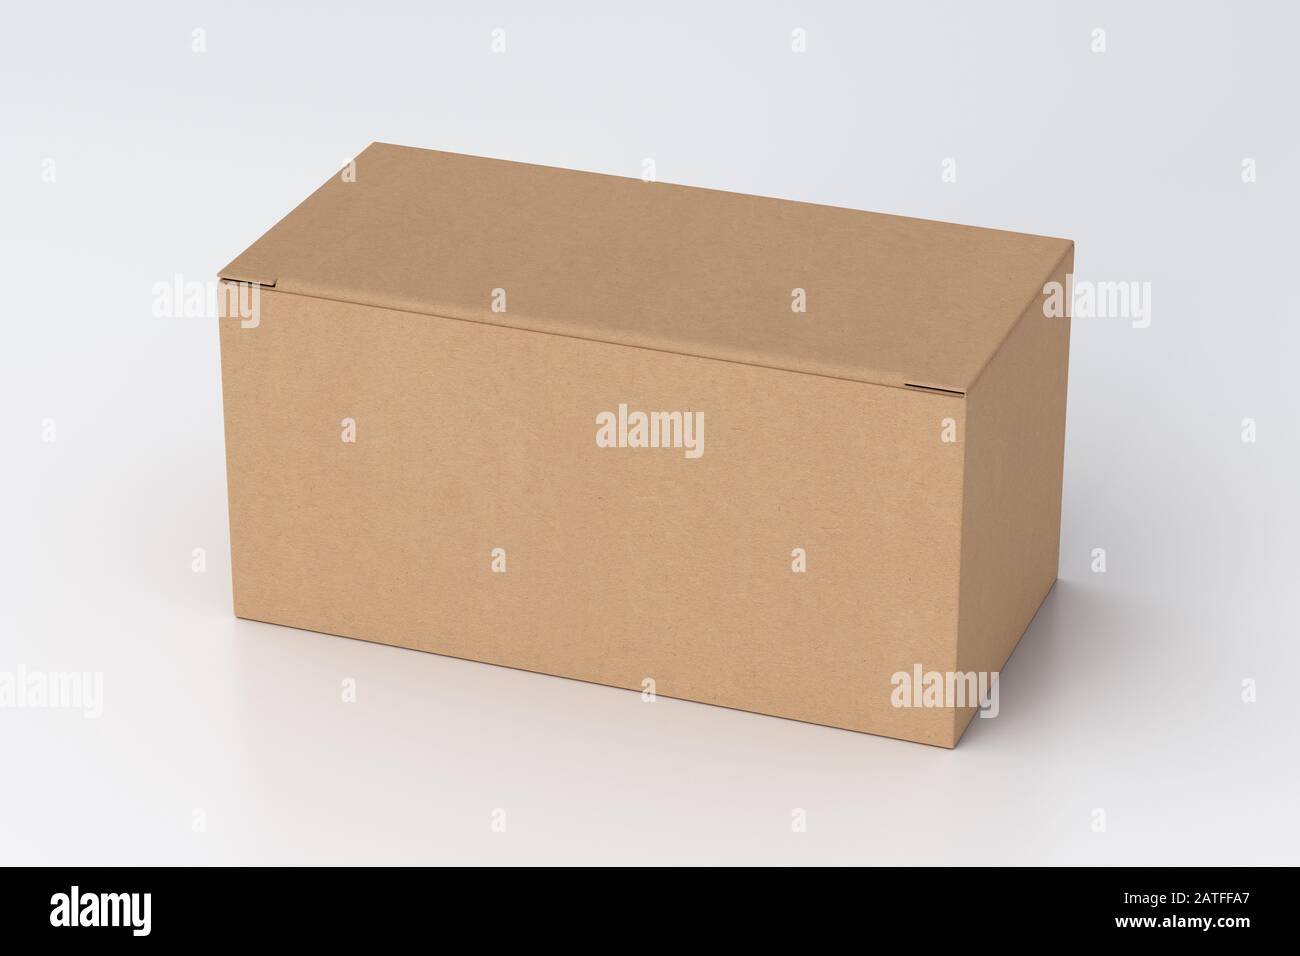 Boîte large en carton vierge avec couvercle rabattable fermé sur fond blanc. Chemin de détourage autour de la maquette de boîte Banque D'Images